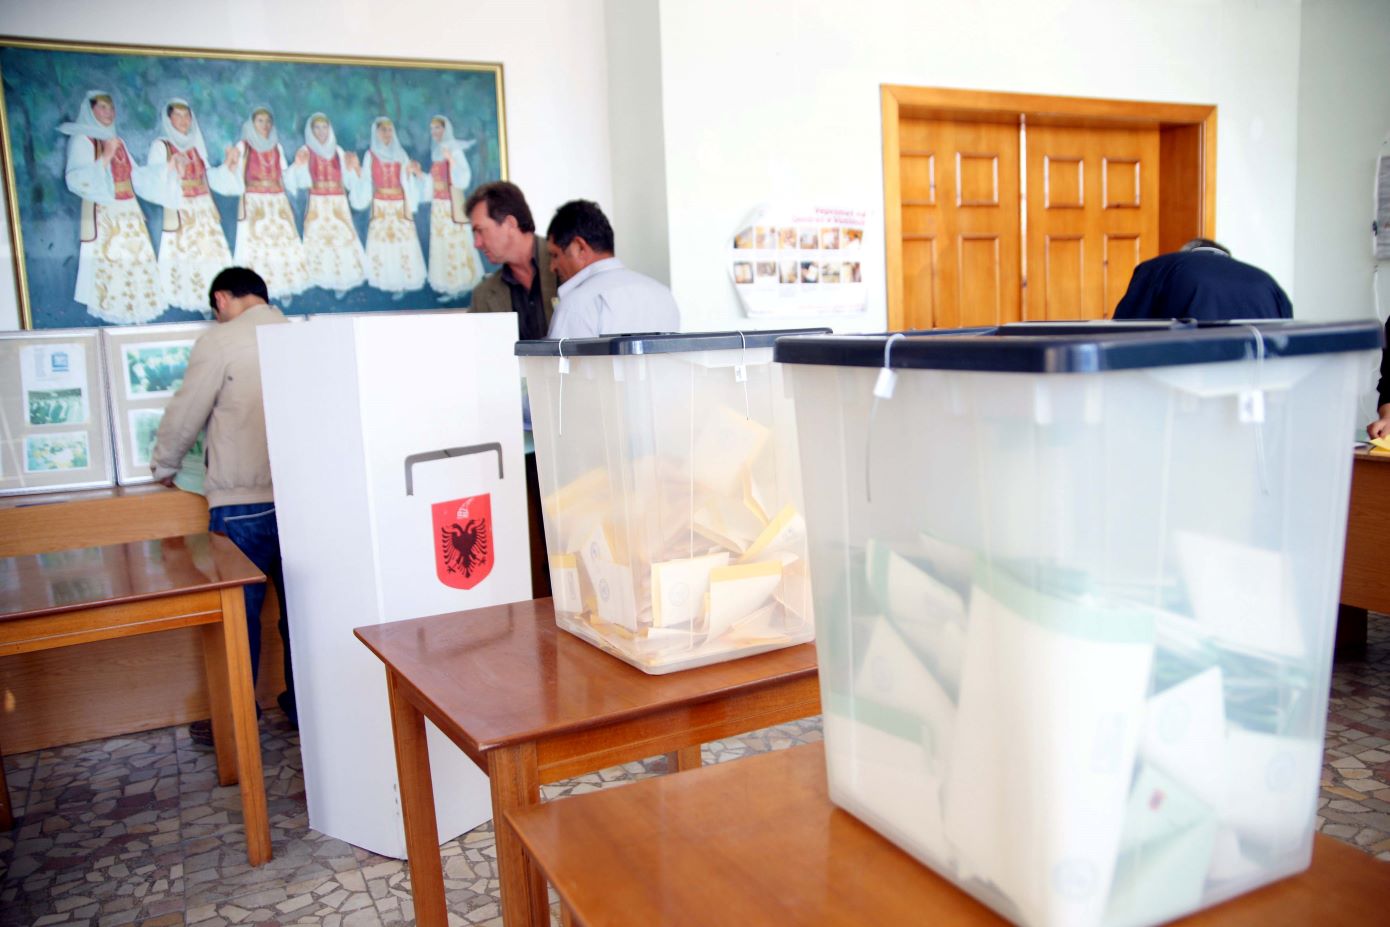 Σοβαρές αμφιβολίες για το αδιάβλητο των εκλογών στη Χειμάρρα &#8211; Για «πληθυσμιακή αλλοίωση» μιλούν διπλωματικές πηγές